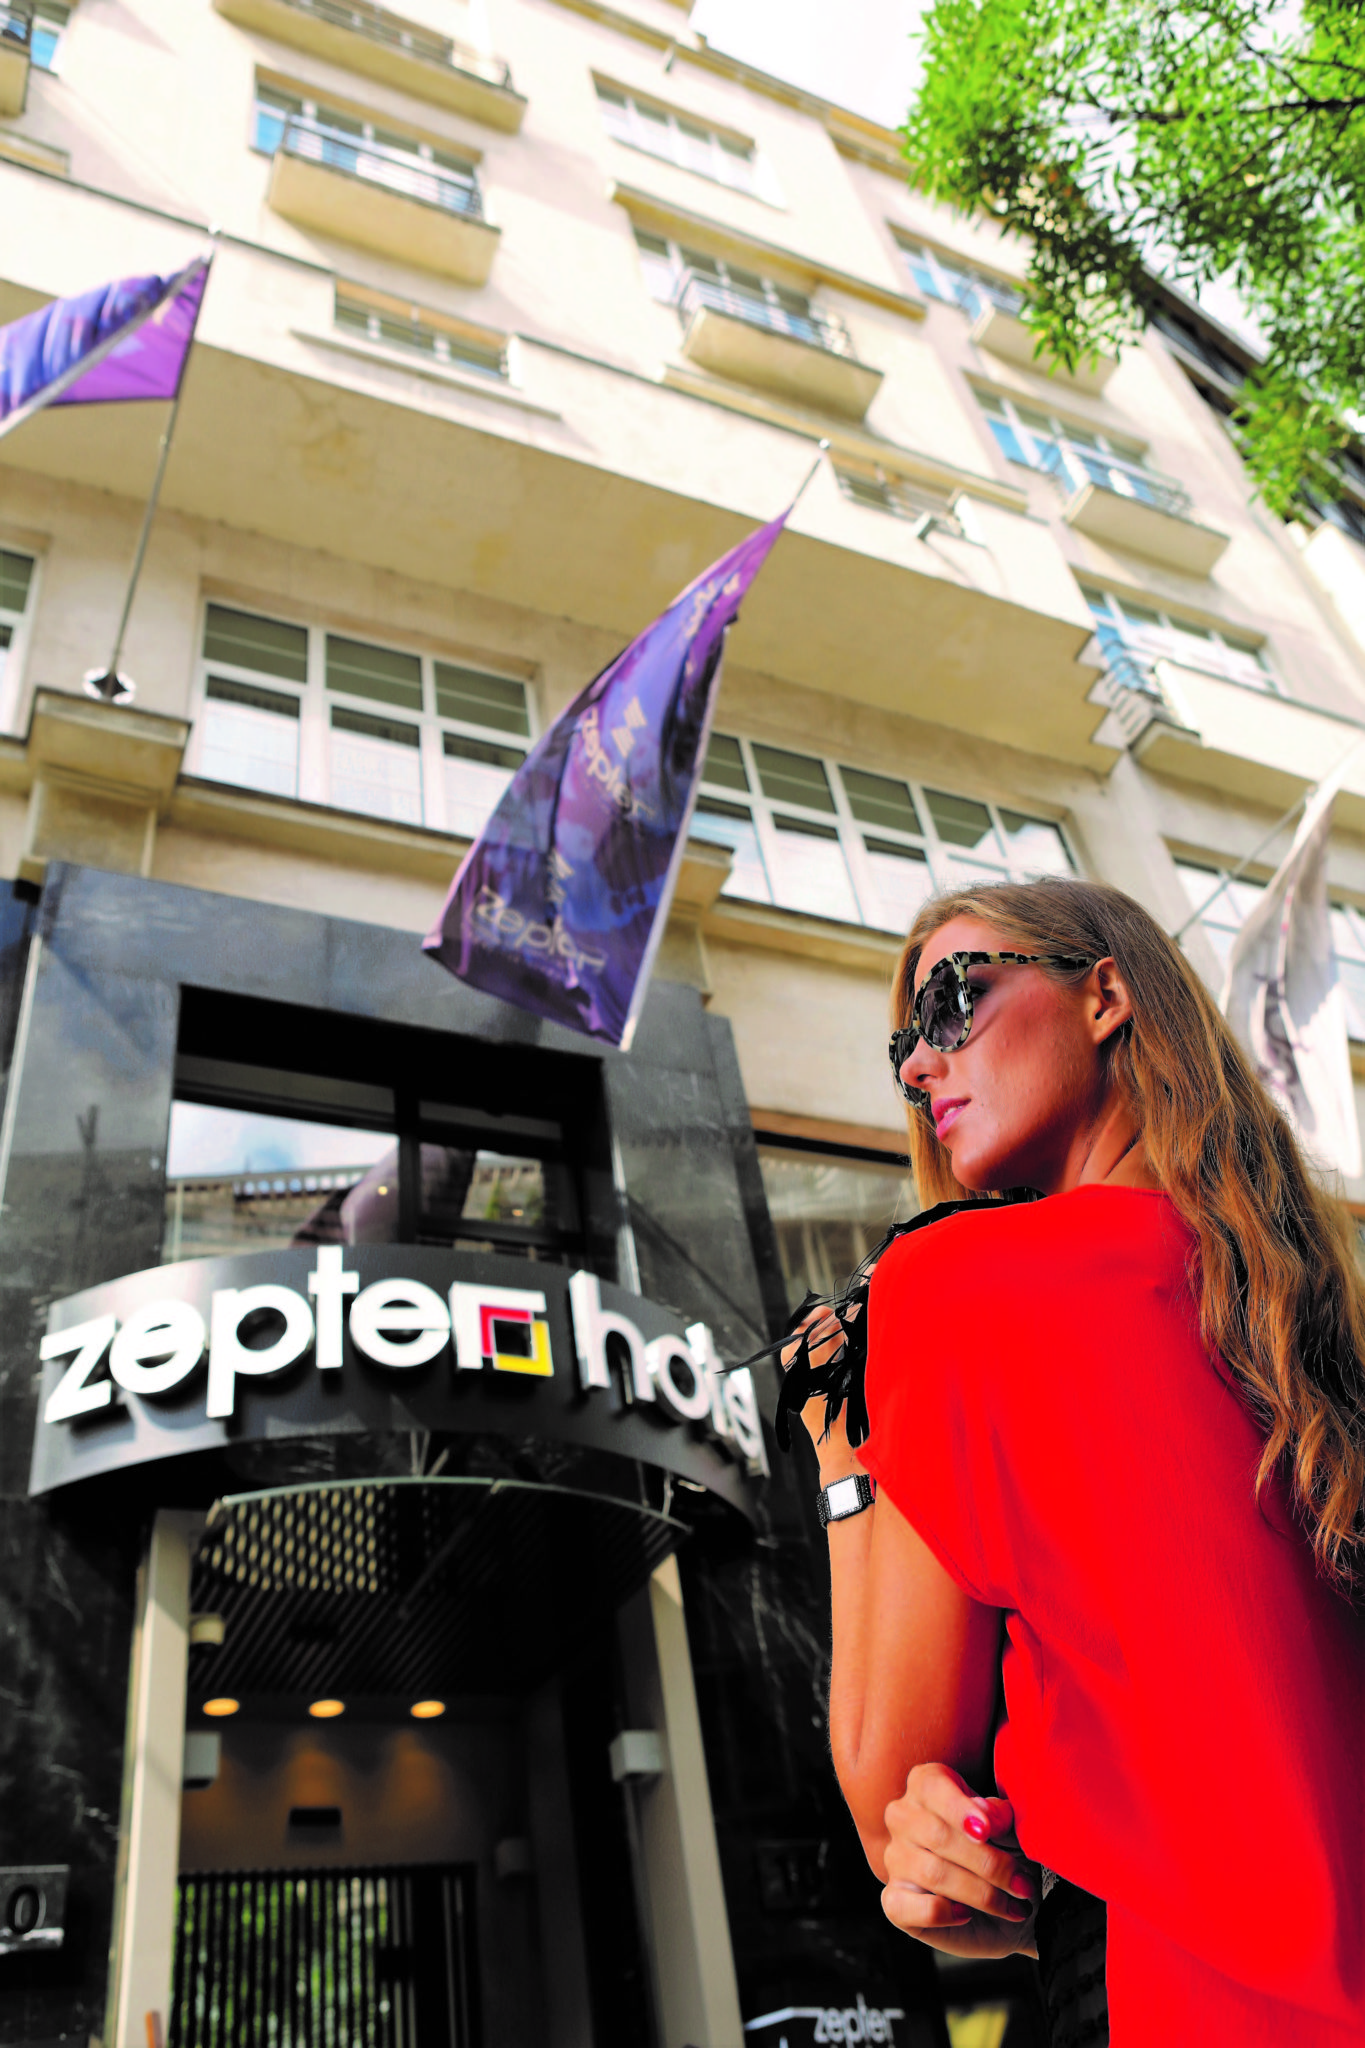 Zepter Hotels: soggiorno indimenticabile all’Hotel Zepter di Belgrado